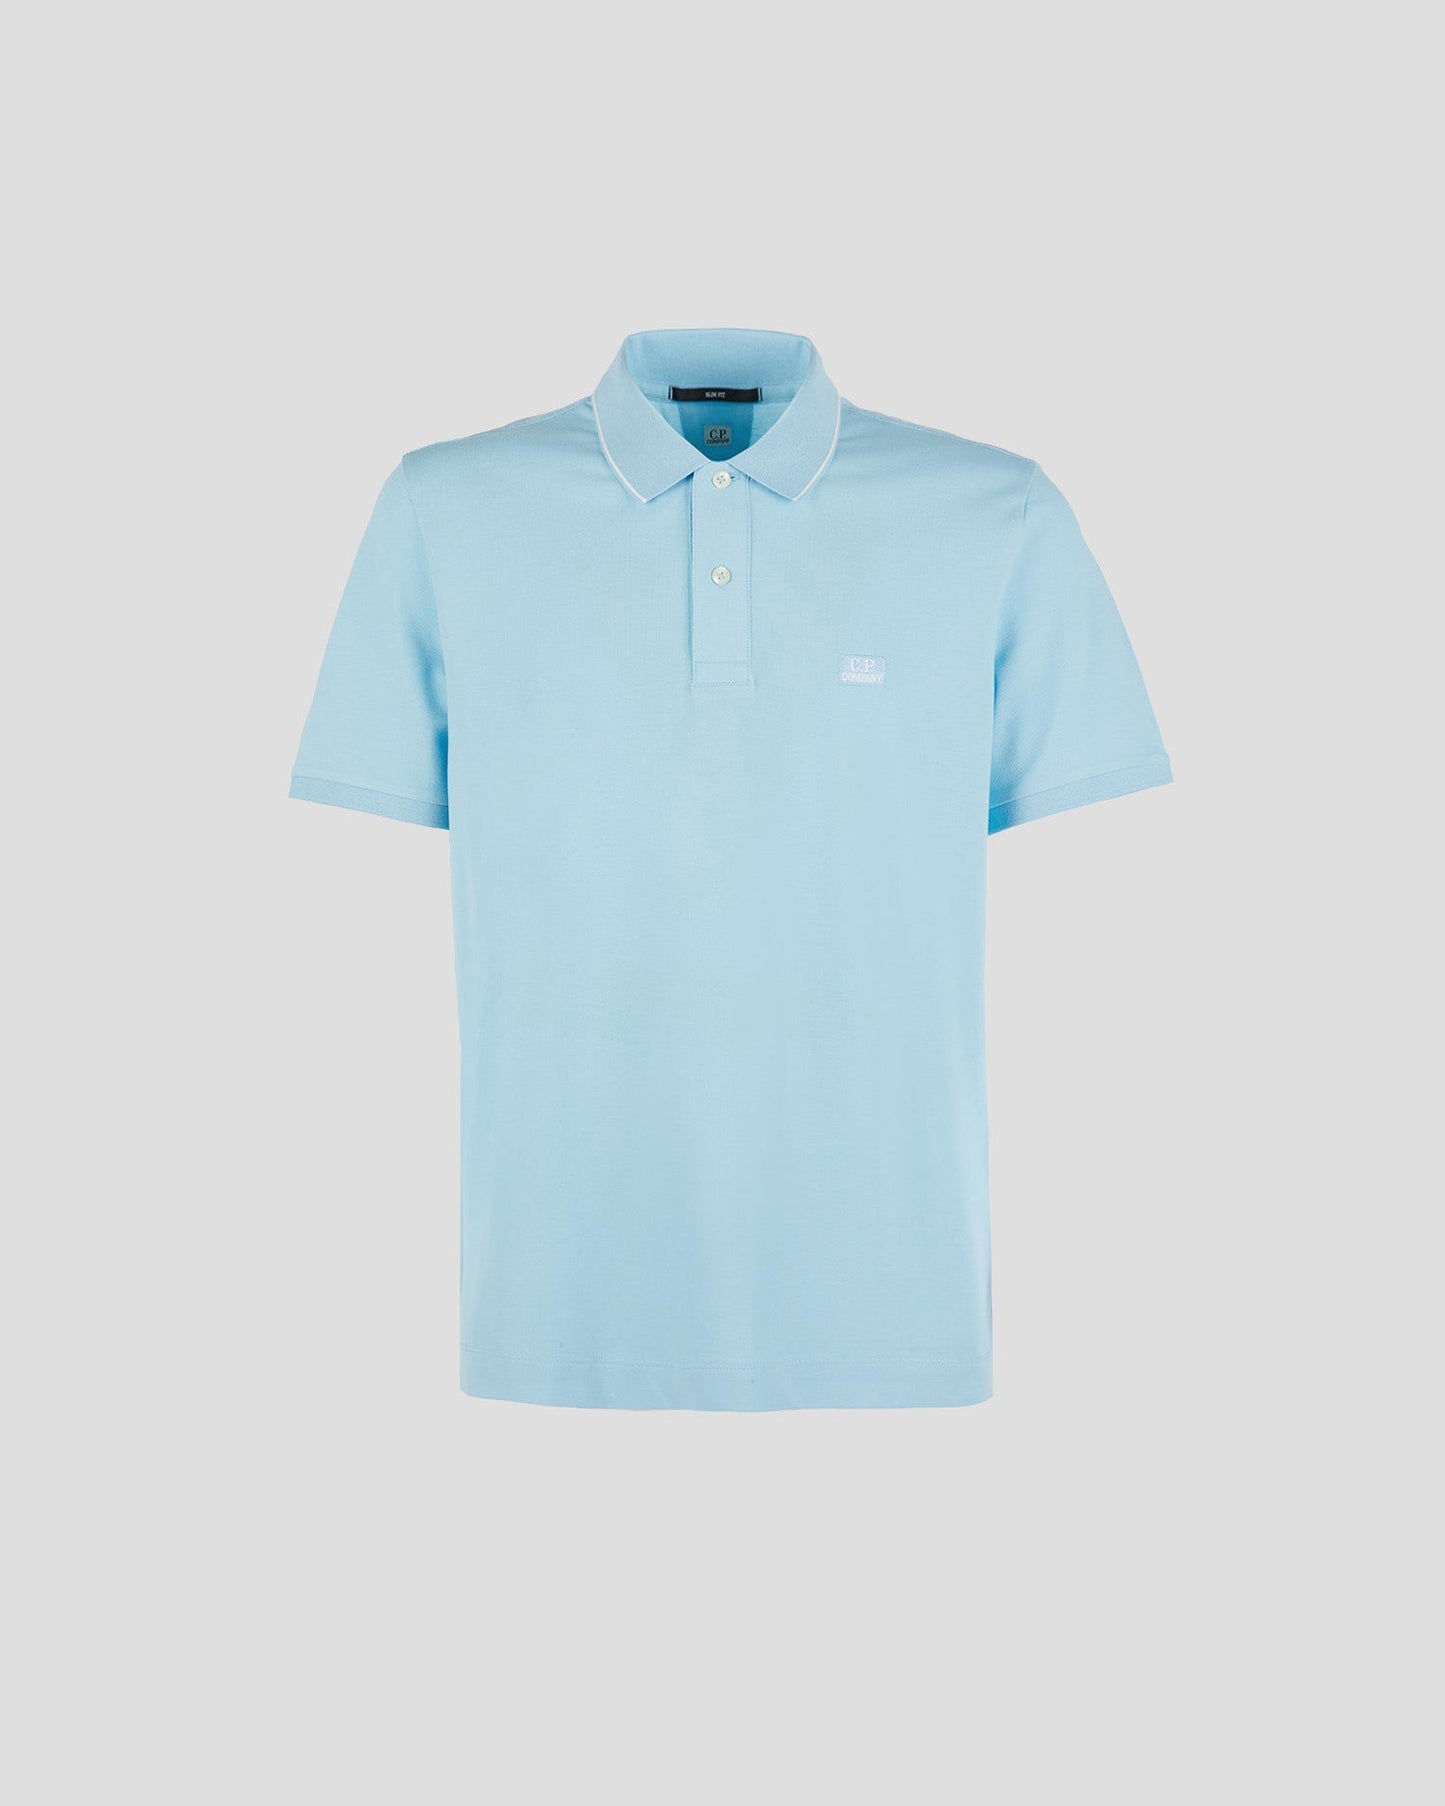 C.P. Company Stretch Piquet Polo Shirt - 832 Sky Blue - Escape Menswear